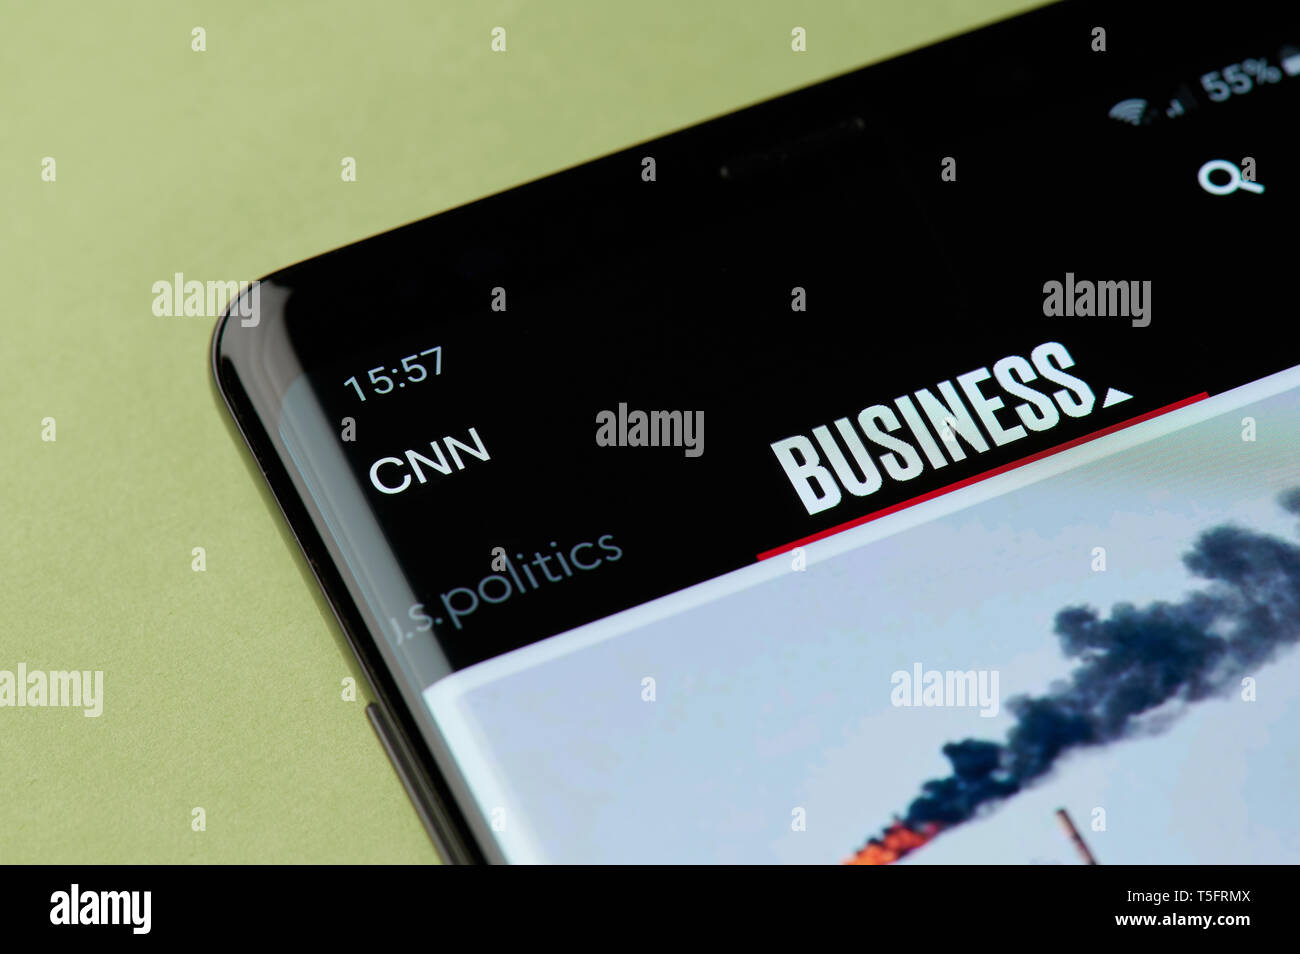 New York, USA - 22 avril 2019 - CNN news app sur l'interface de l'écran du smartphone Banque D'Images